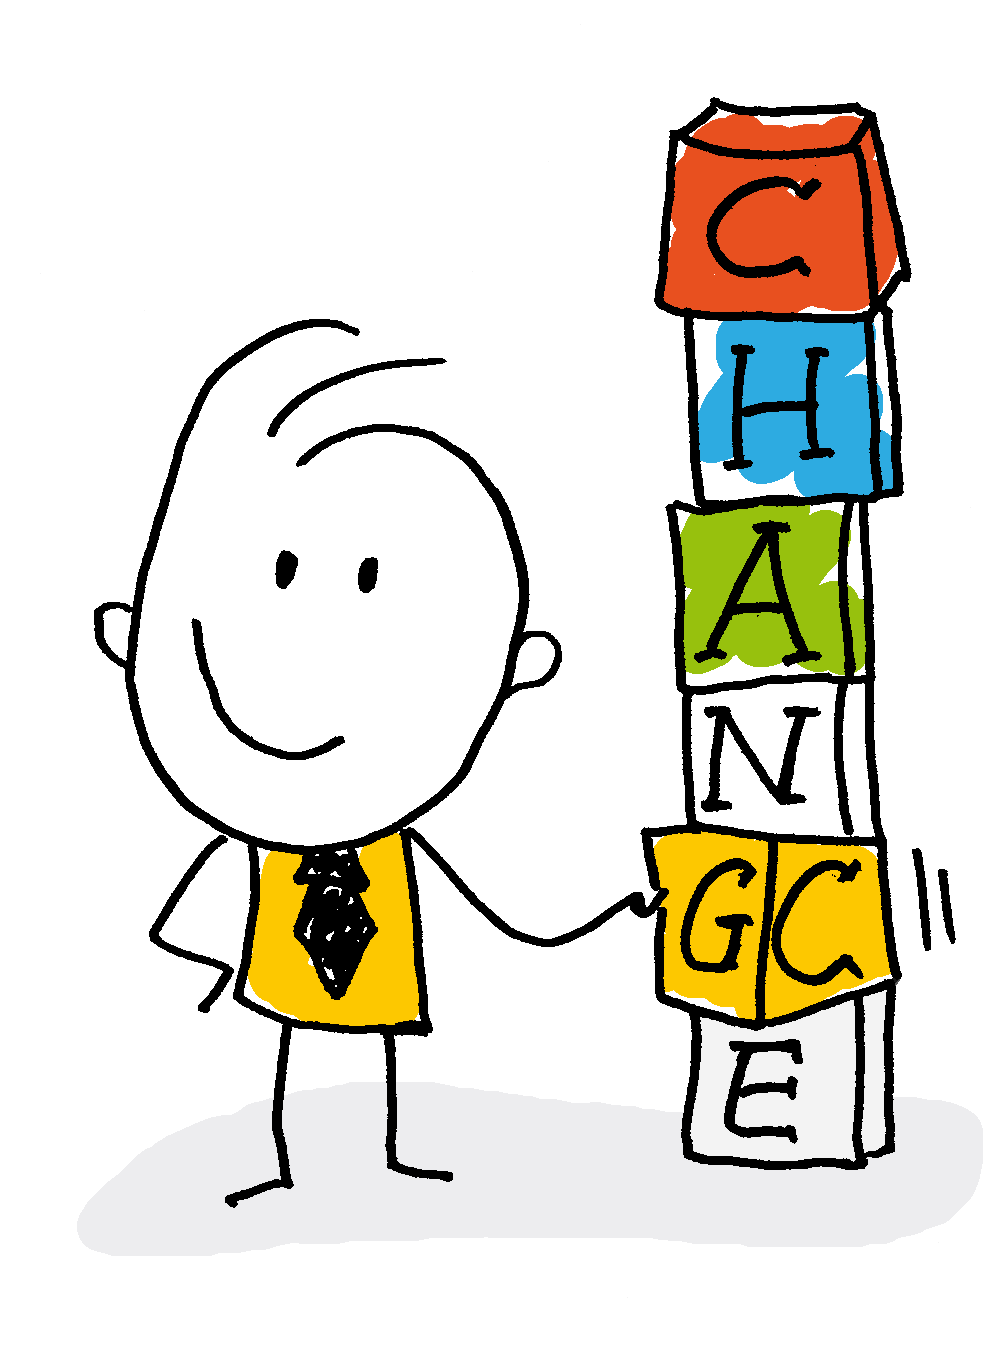 Cartoon einer Person mit Krawatte, die stolz einen Turm aus Buchstabenblöcken hält, die das Wort 'CHANGE' bilden.